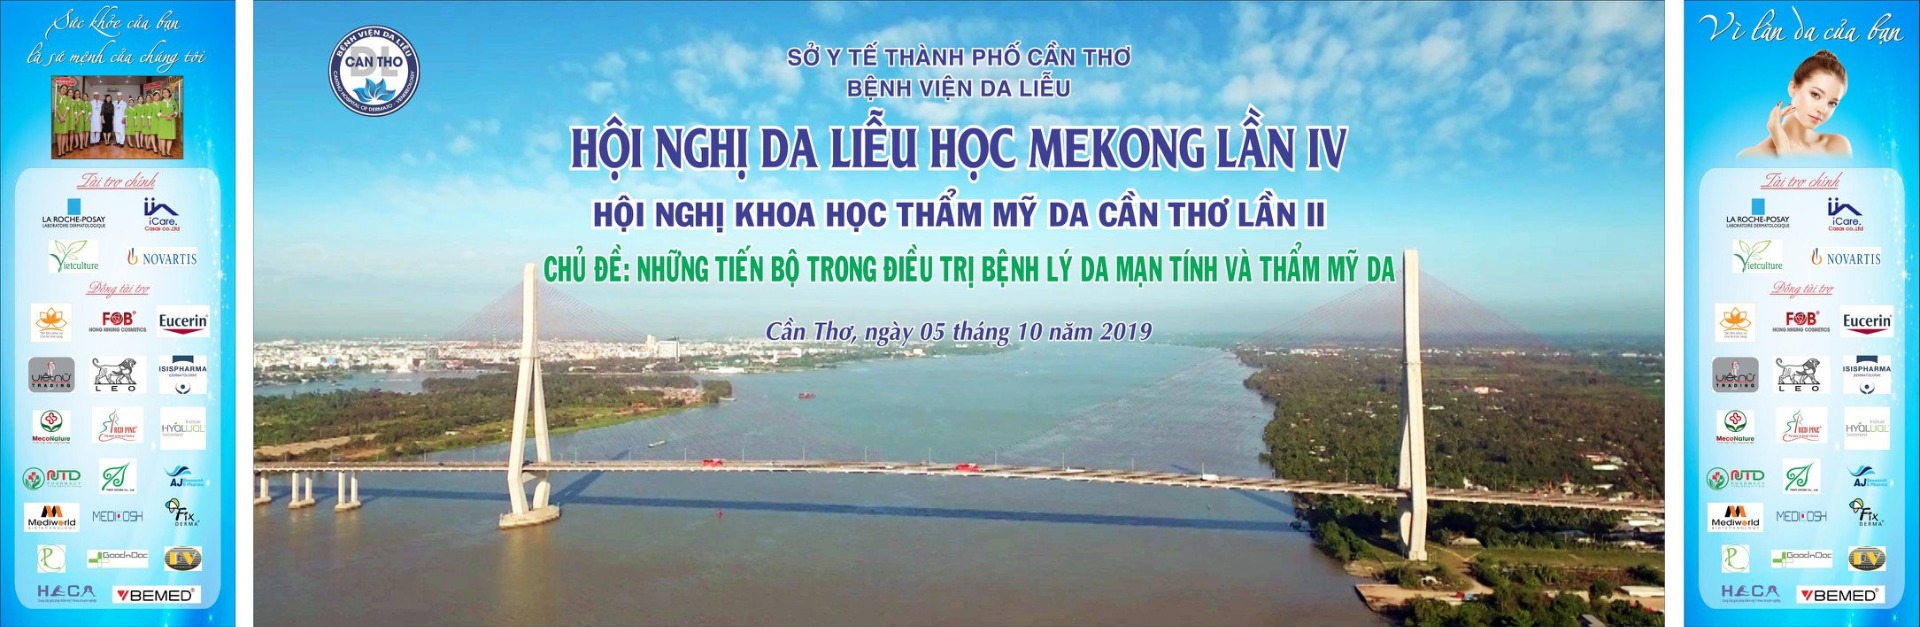 Hội nghị Da liễu học Mekong lần IV tại Cần Thơ - Hội Nghị Khoa Học Thẩm Mĩ Về Da Cần Thơ lần Thứ II